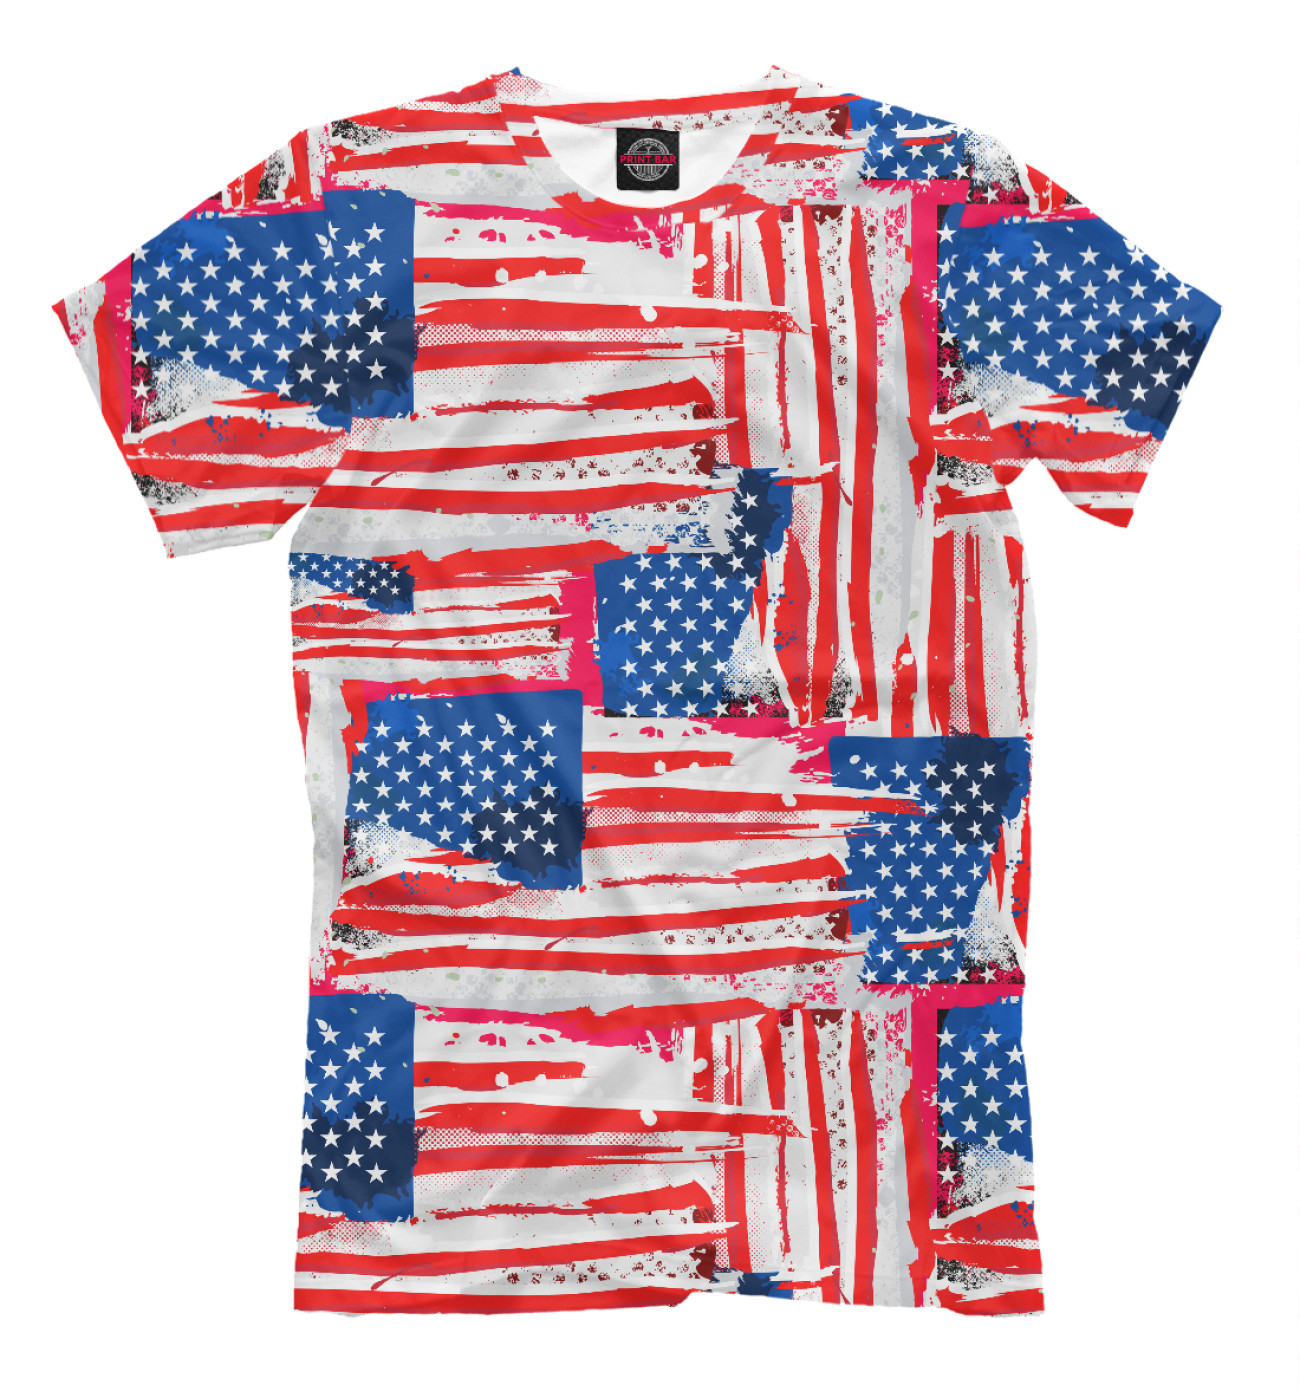 Купить футболки флагами. Одежда США. Одежда в Америке. Одежда с американским флагом. Футболка флаг США.